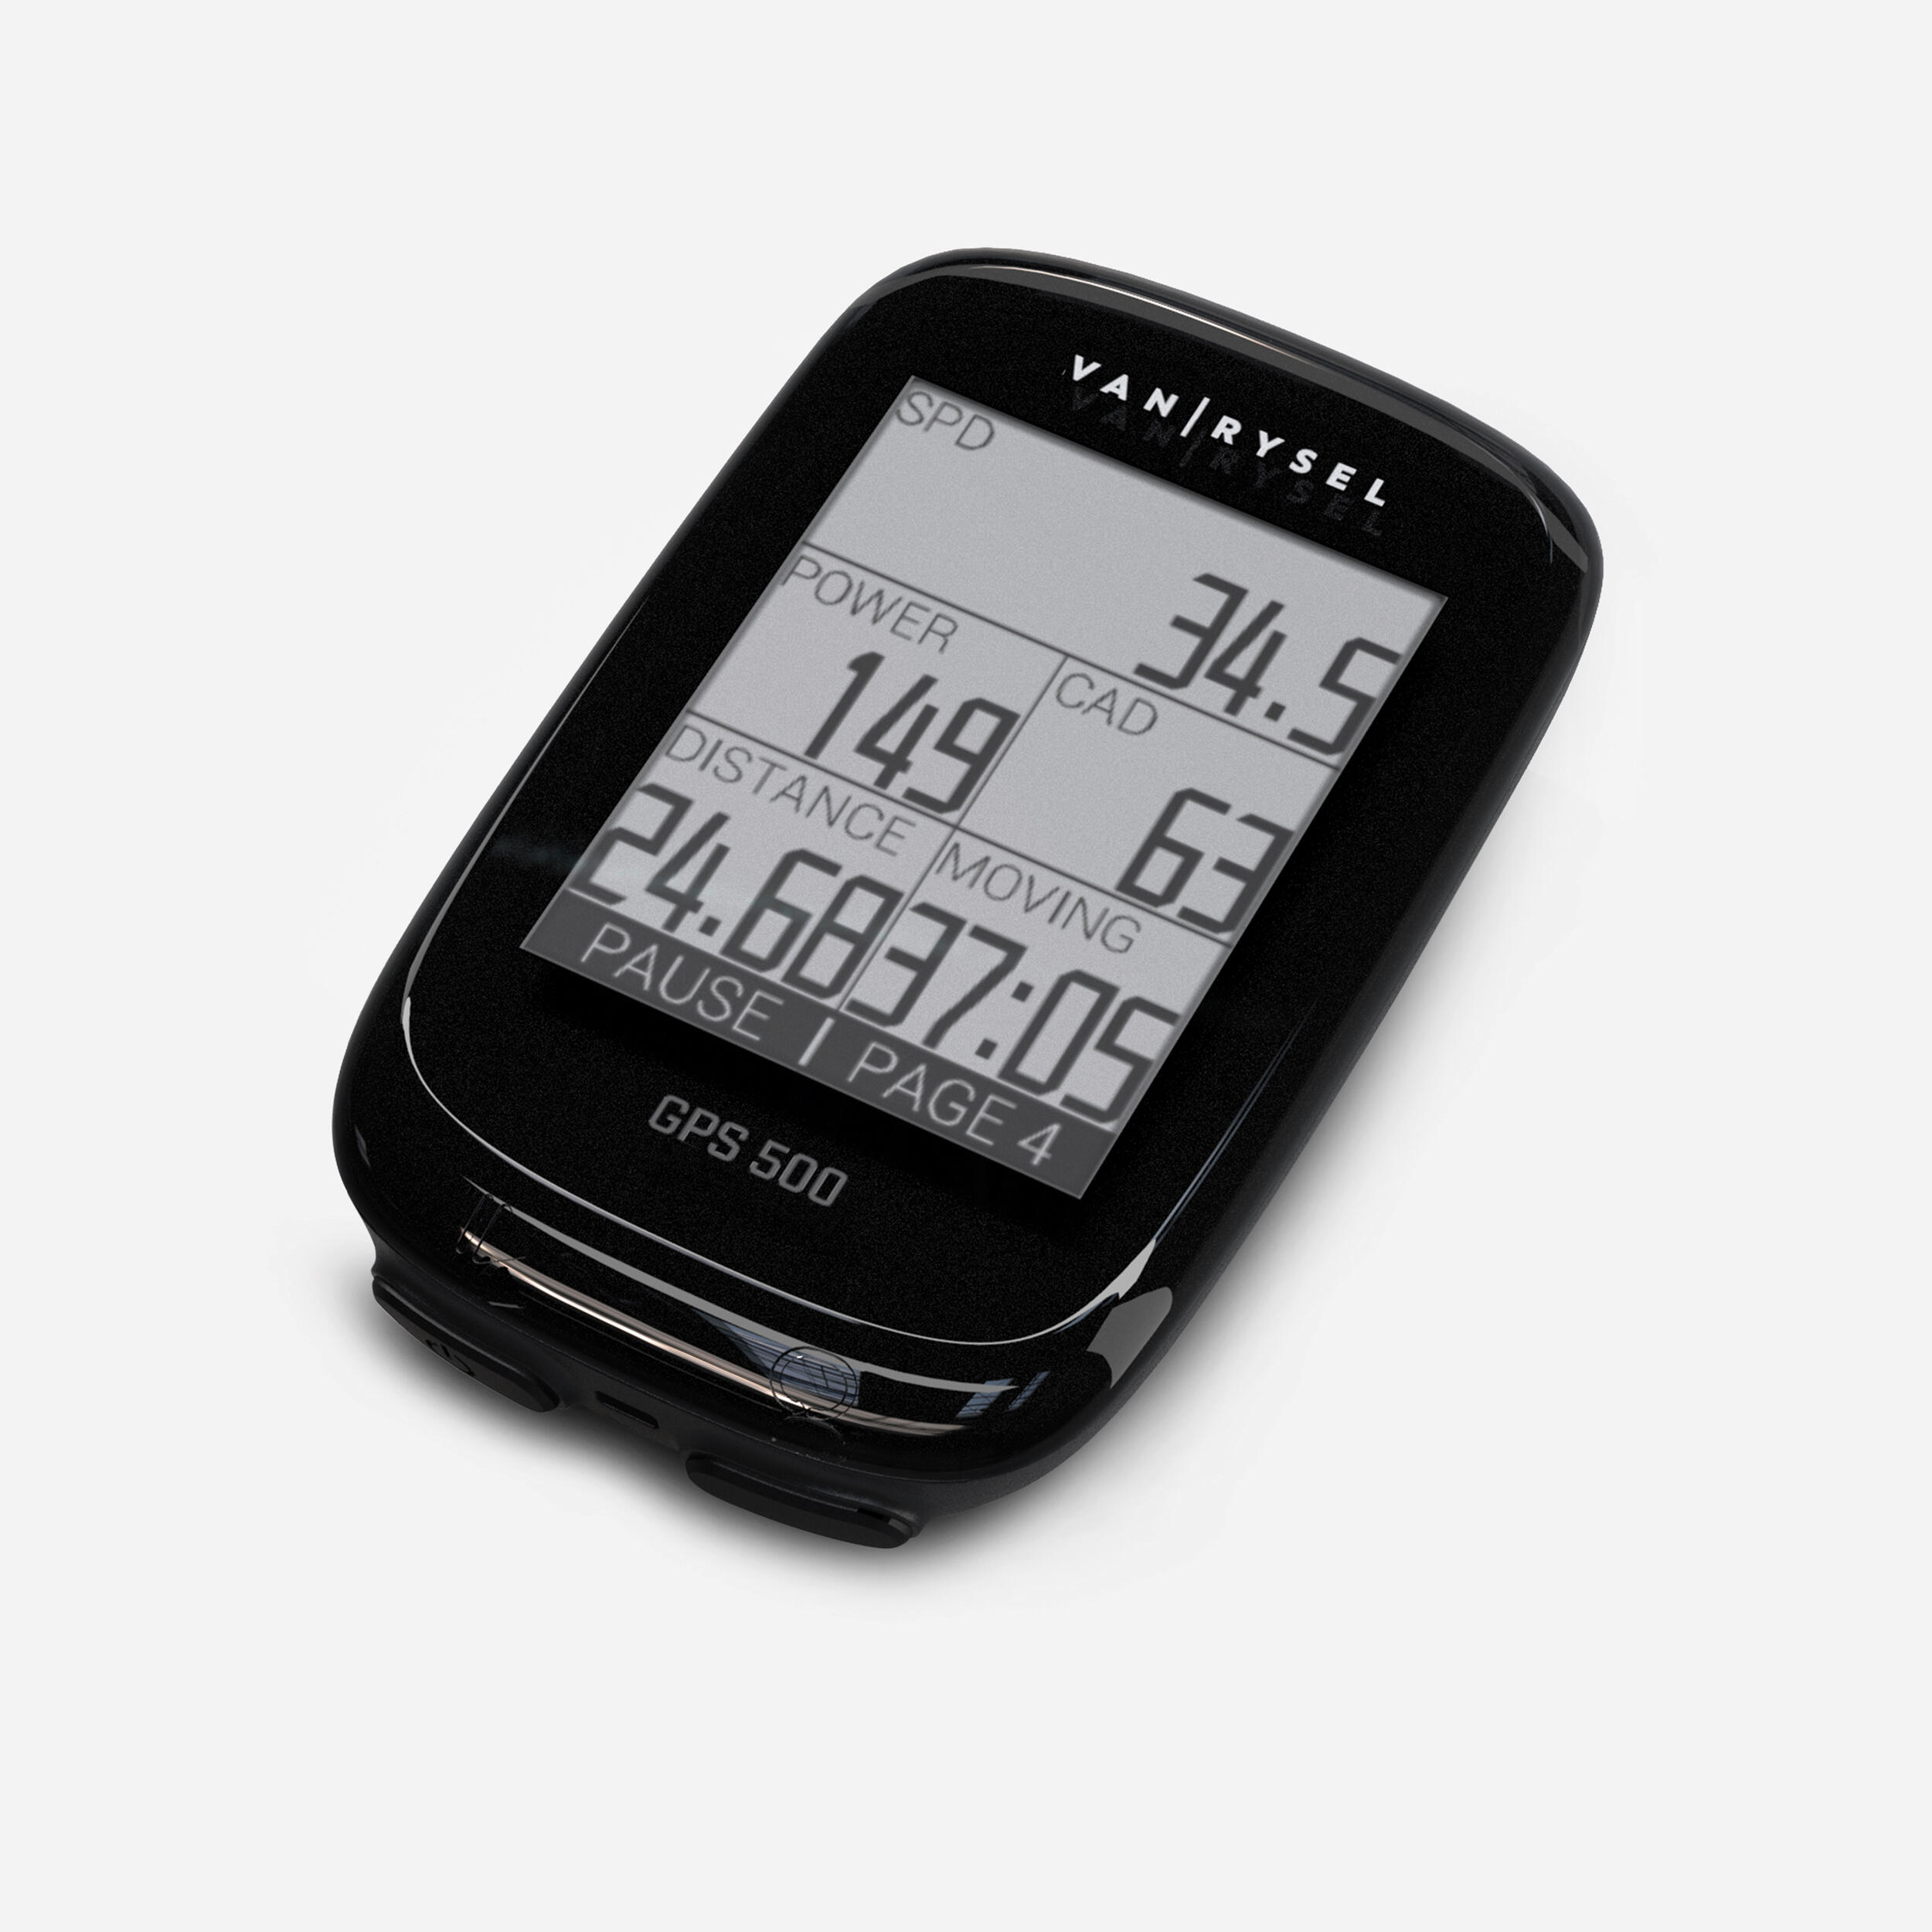 VAN RYSEL Cyclometer GPS 500